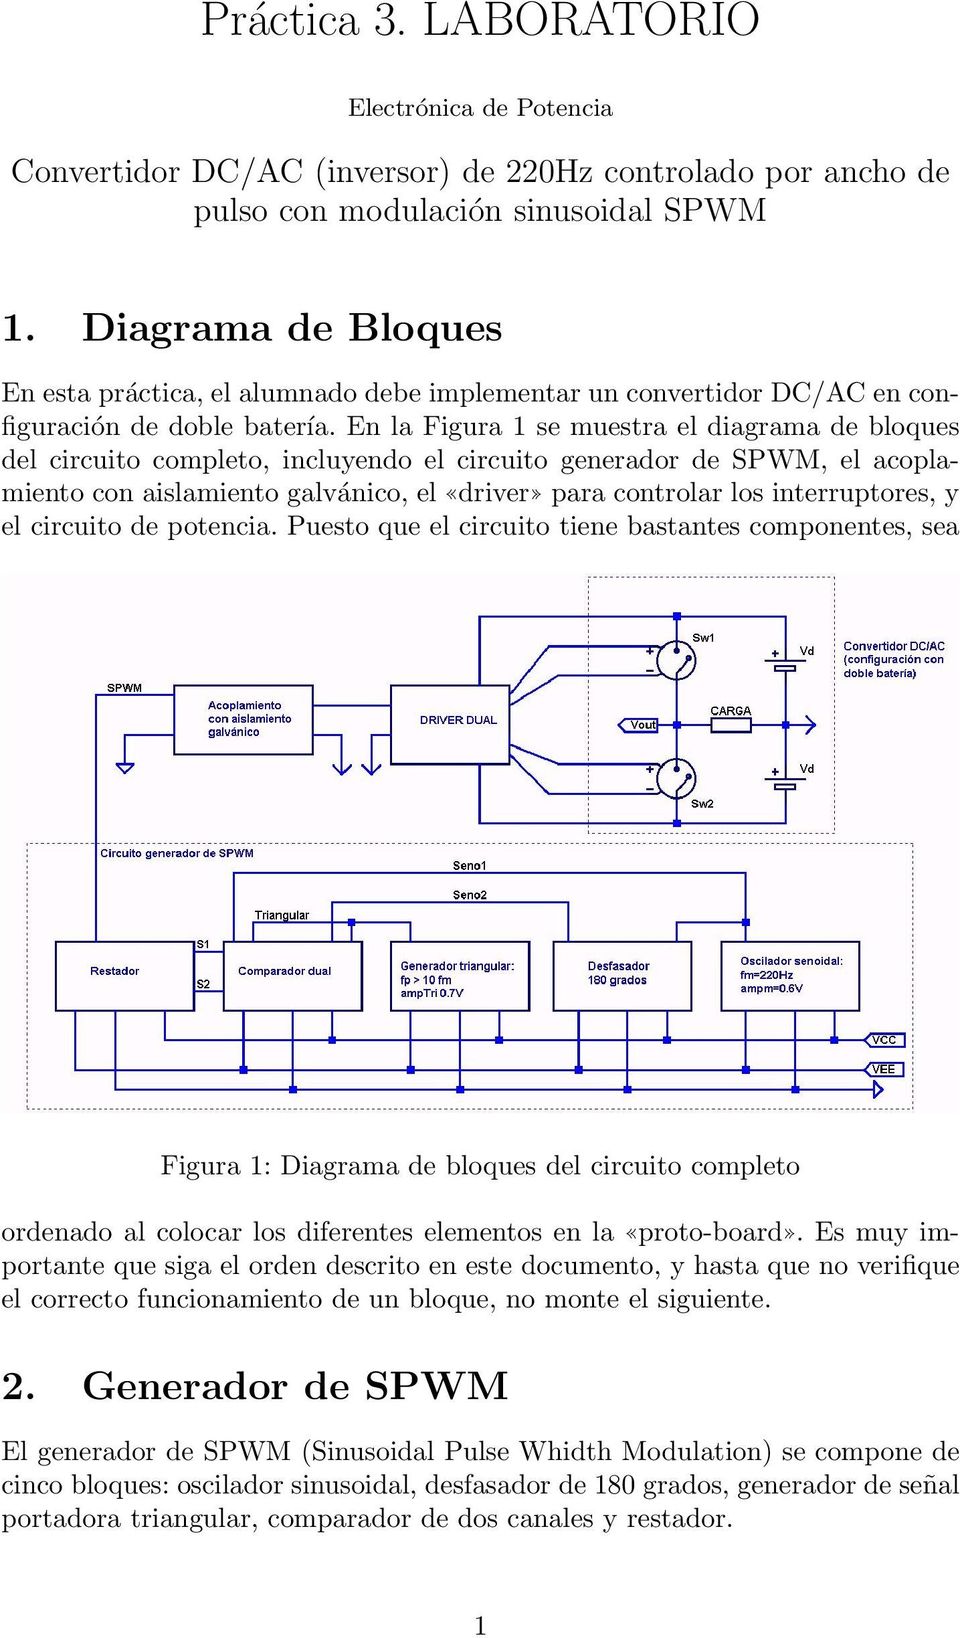 En la Figura 1 se muestra el diagrama de bloques del circuito completo, incluyendo el circuito generador de SPWM, el acoplamiento con aislamiento galvánico, el driver para controlar los